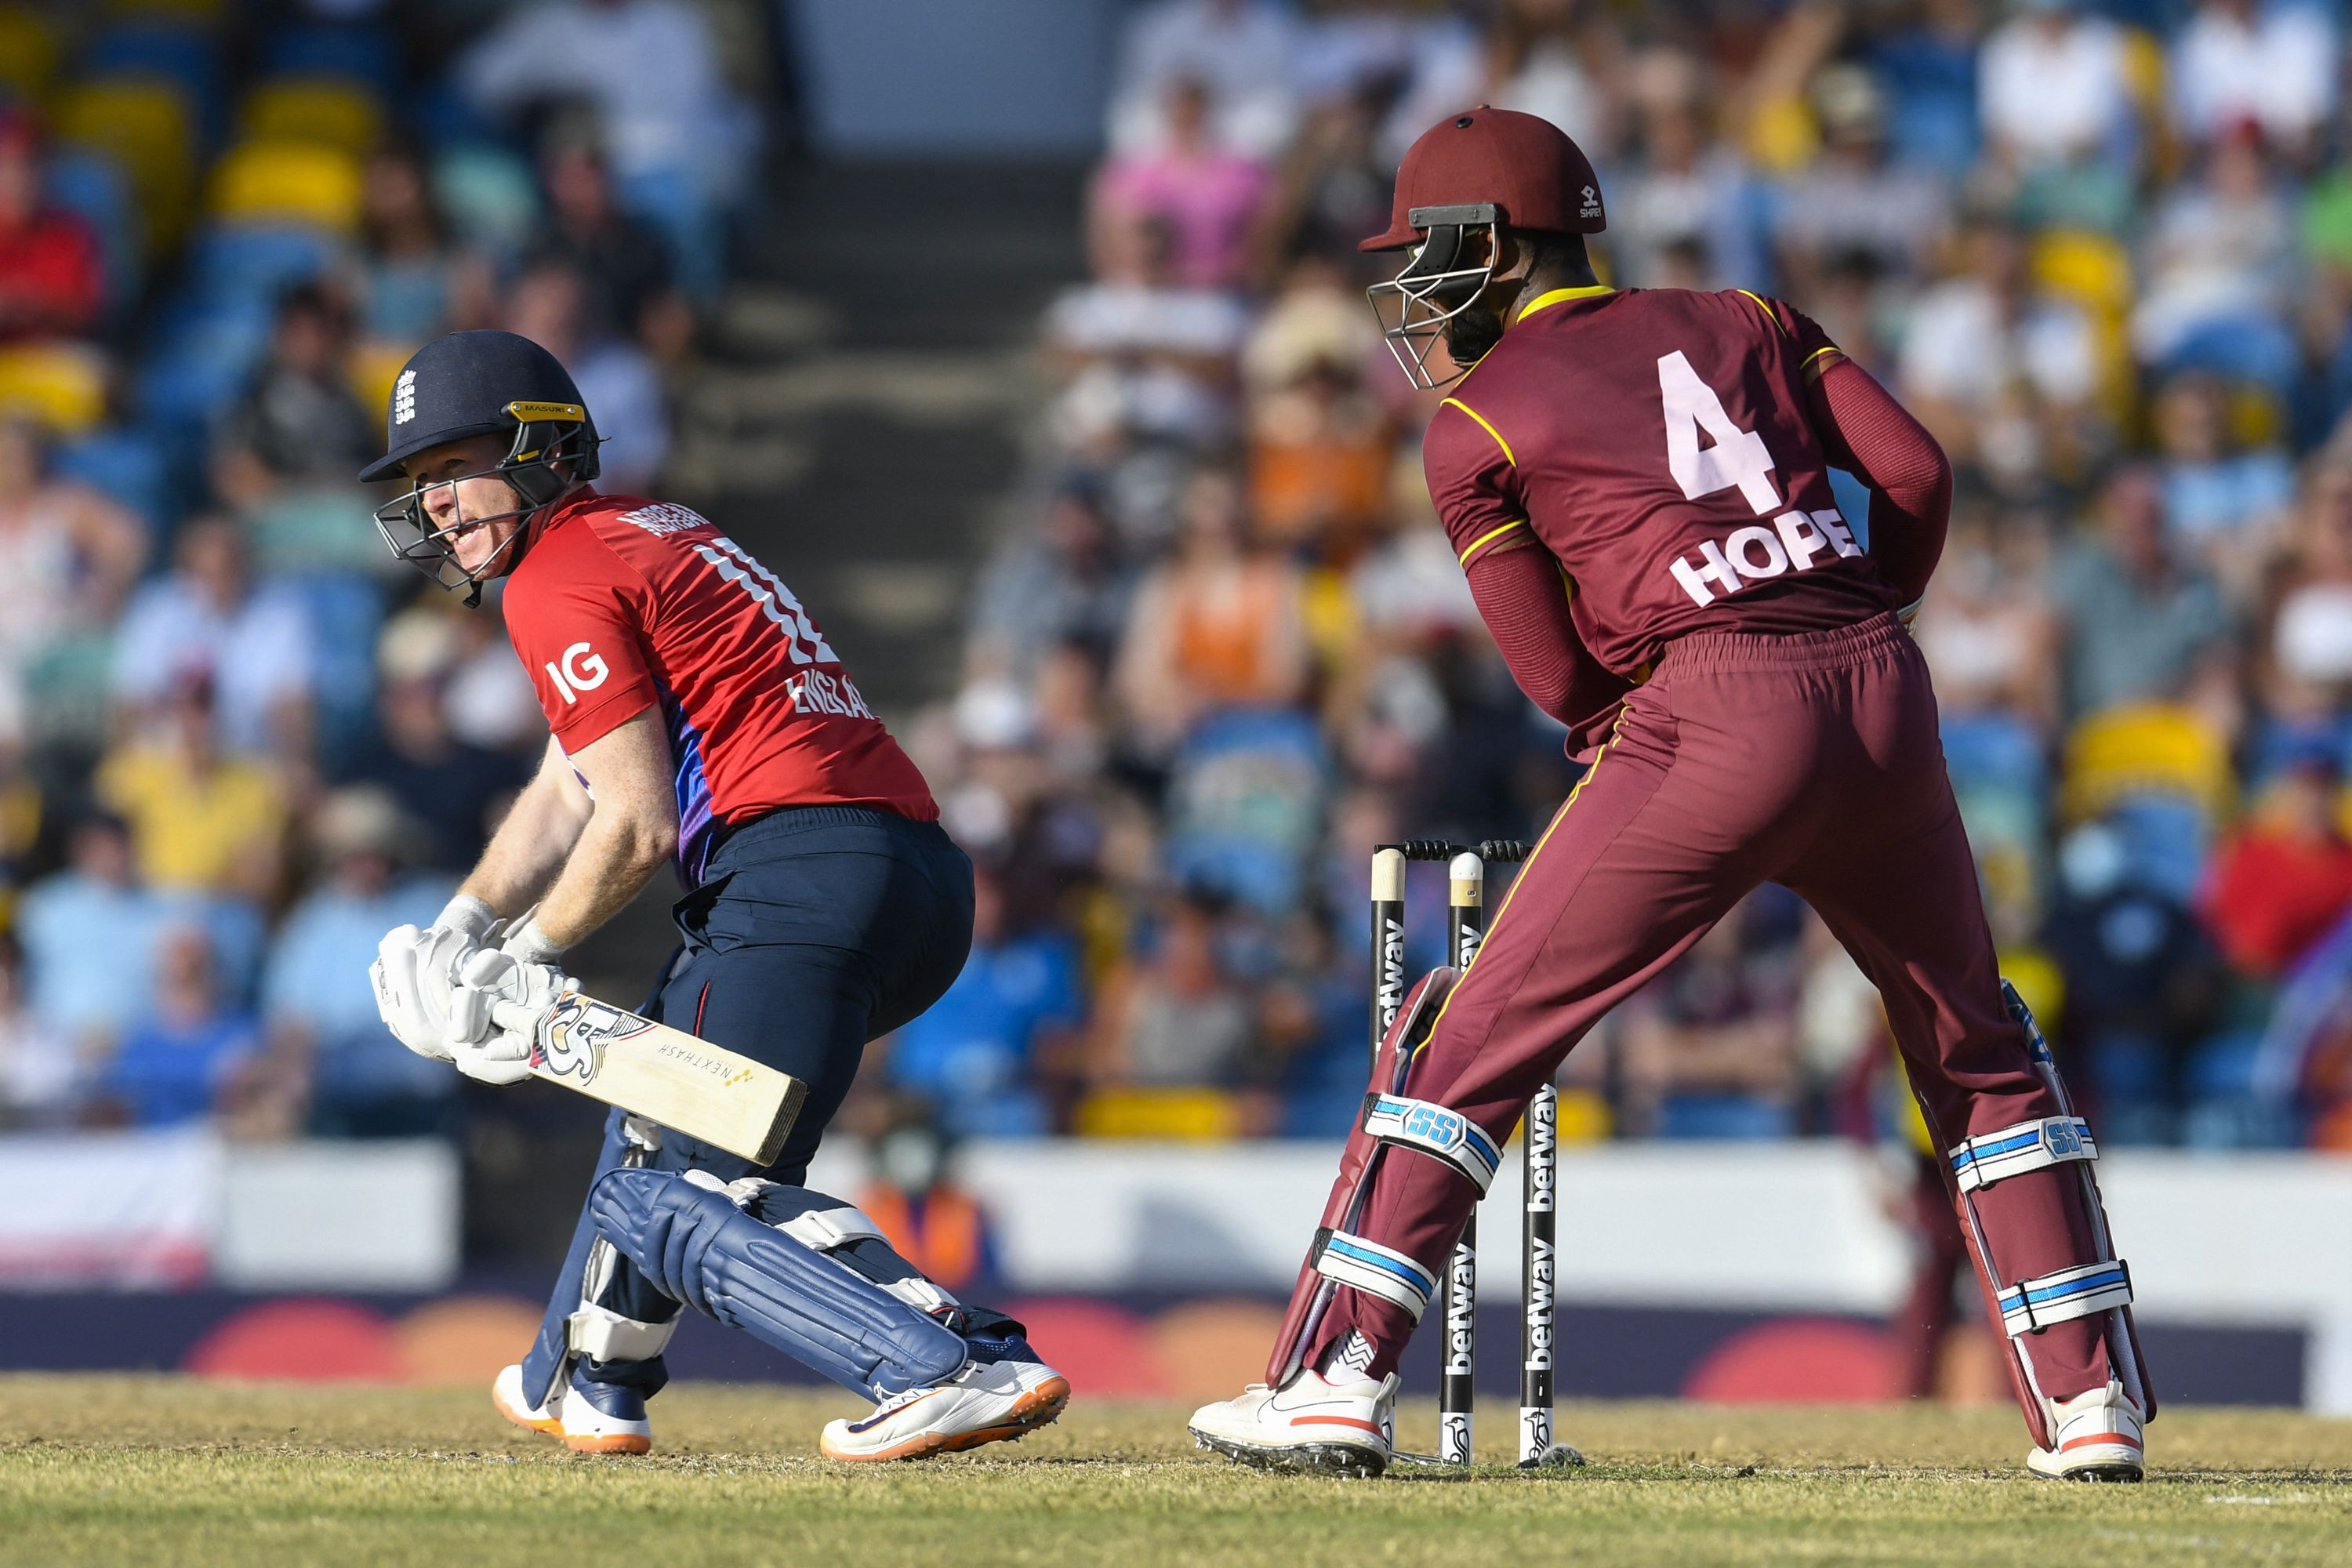 वेस्टइंडीज के खिलाफ पहले टी20 में हार के बाद बोले मोर्गन- अगले मैच में नए प्लान के साथ वापसी करेंगे